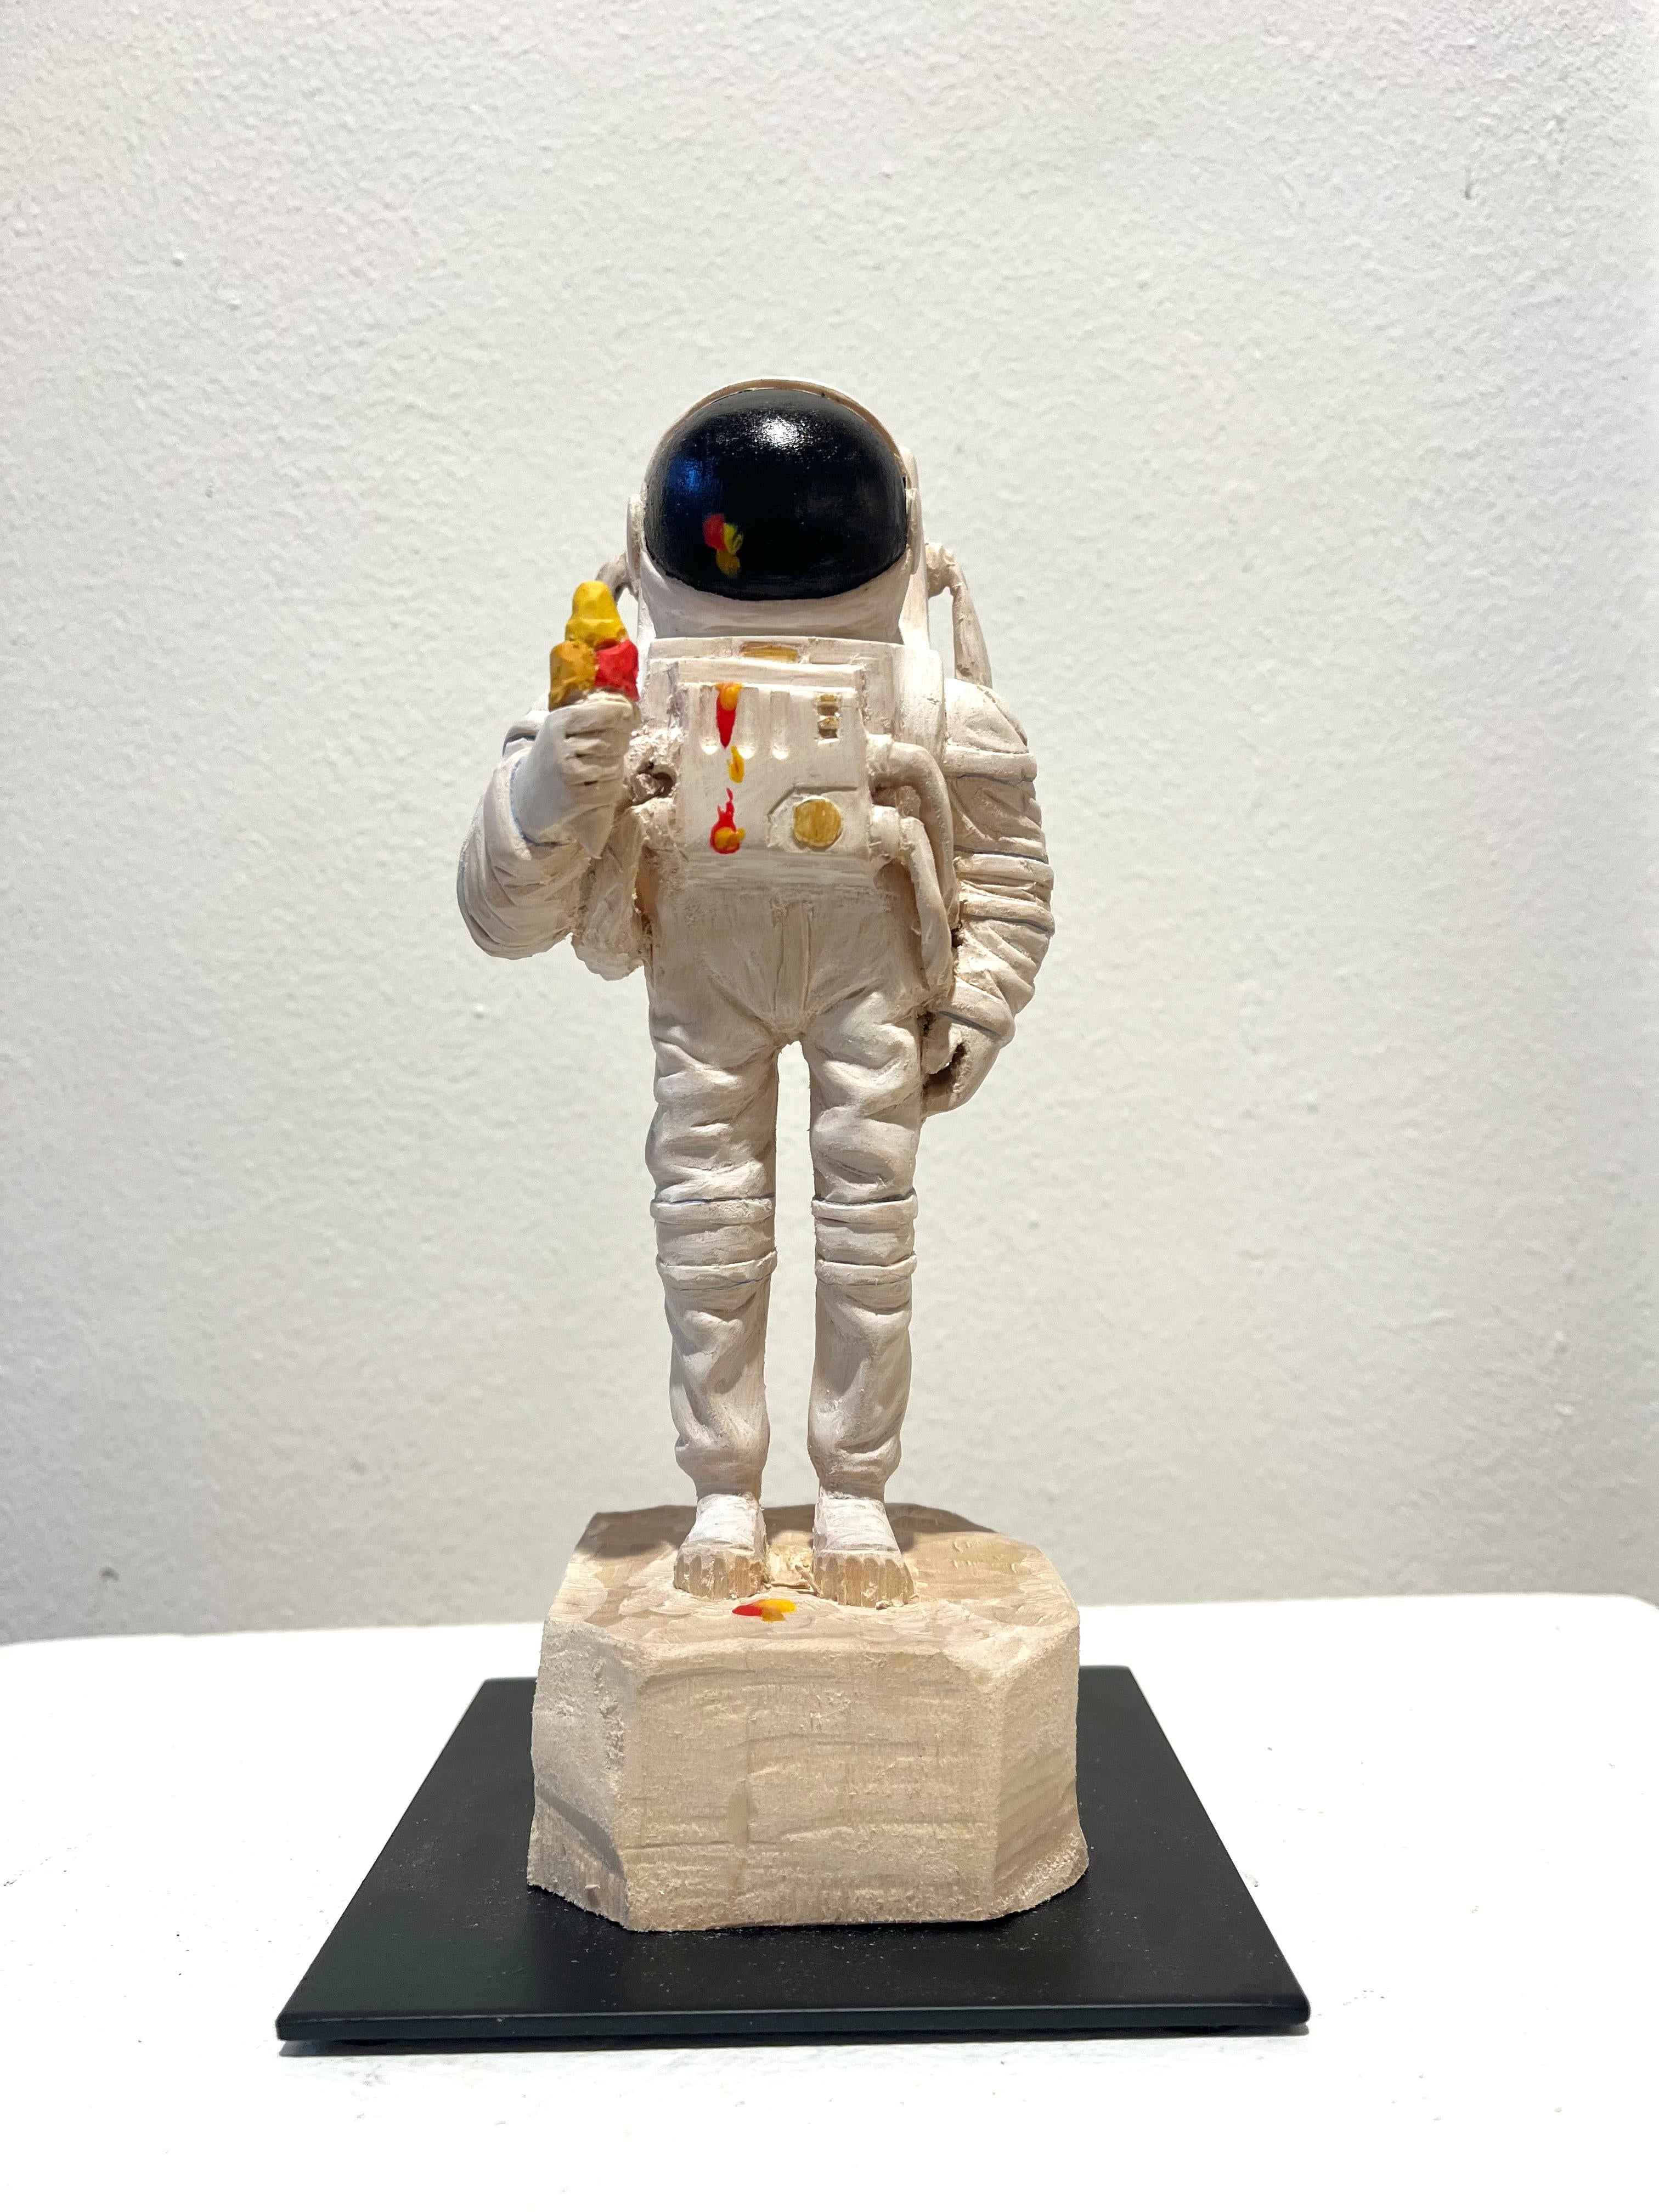 Einzigartige Holzskulptur eines Astronauten mit Eiscreme-Eiscreme-Eiscreme-Schmelz Zahn'' – Sculpture von Philipp Liehr